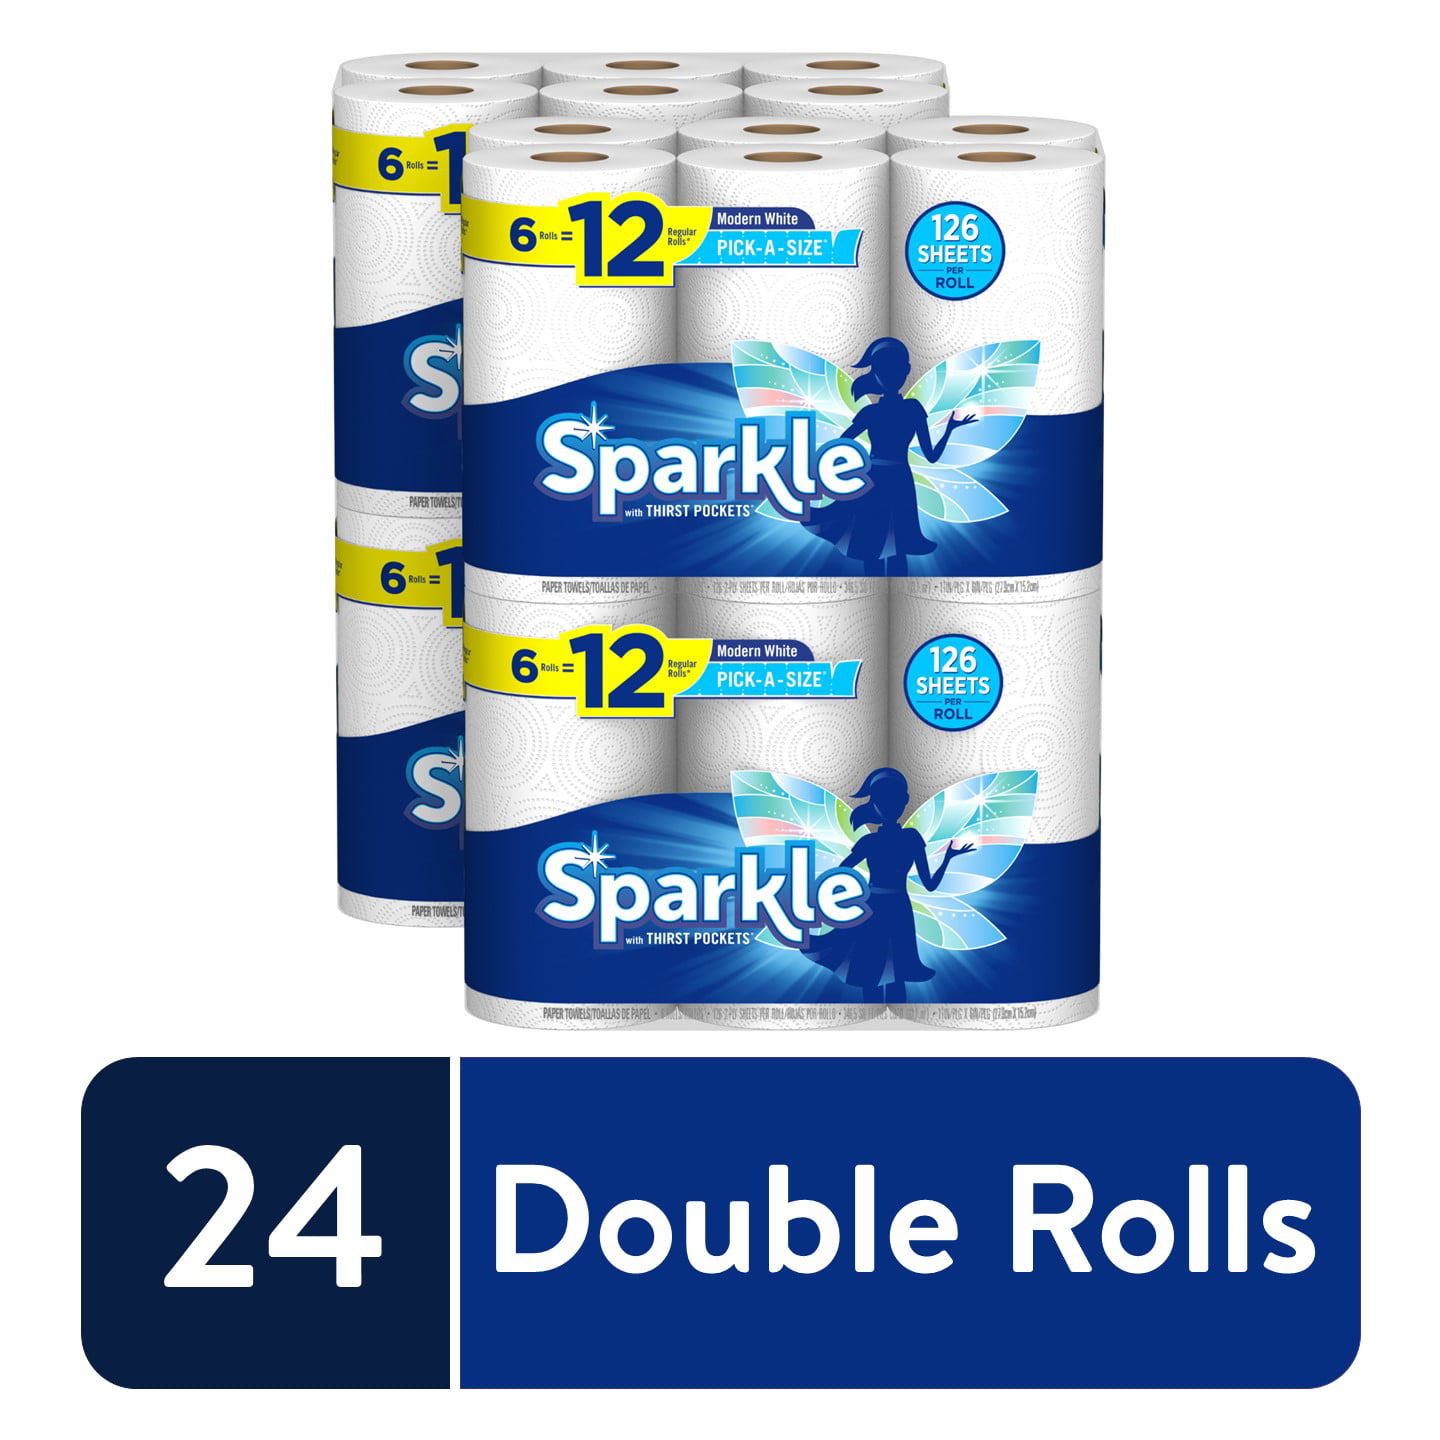 Sparkle Paper Towels, 24 Double Rolls, Pick-A-Size - Walmart.com ...